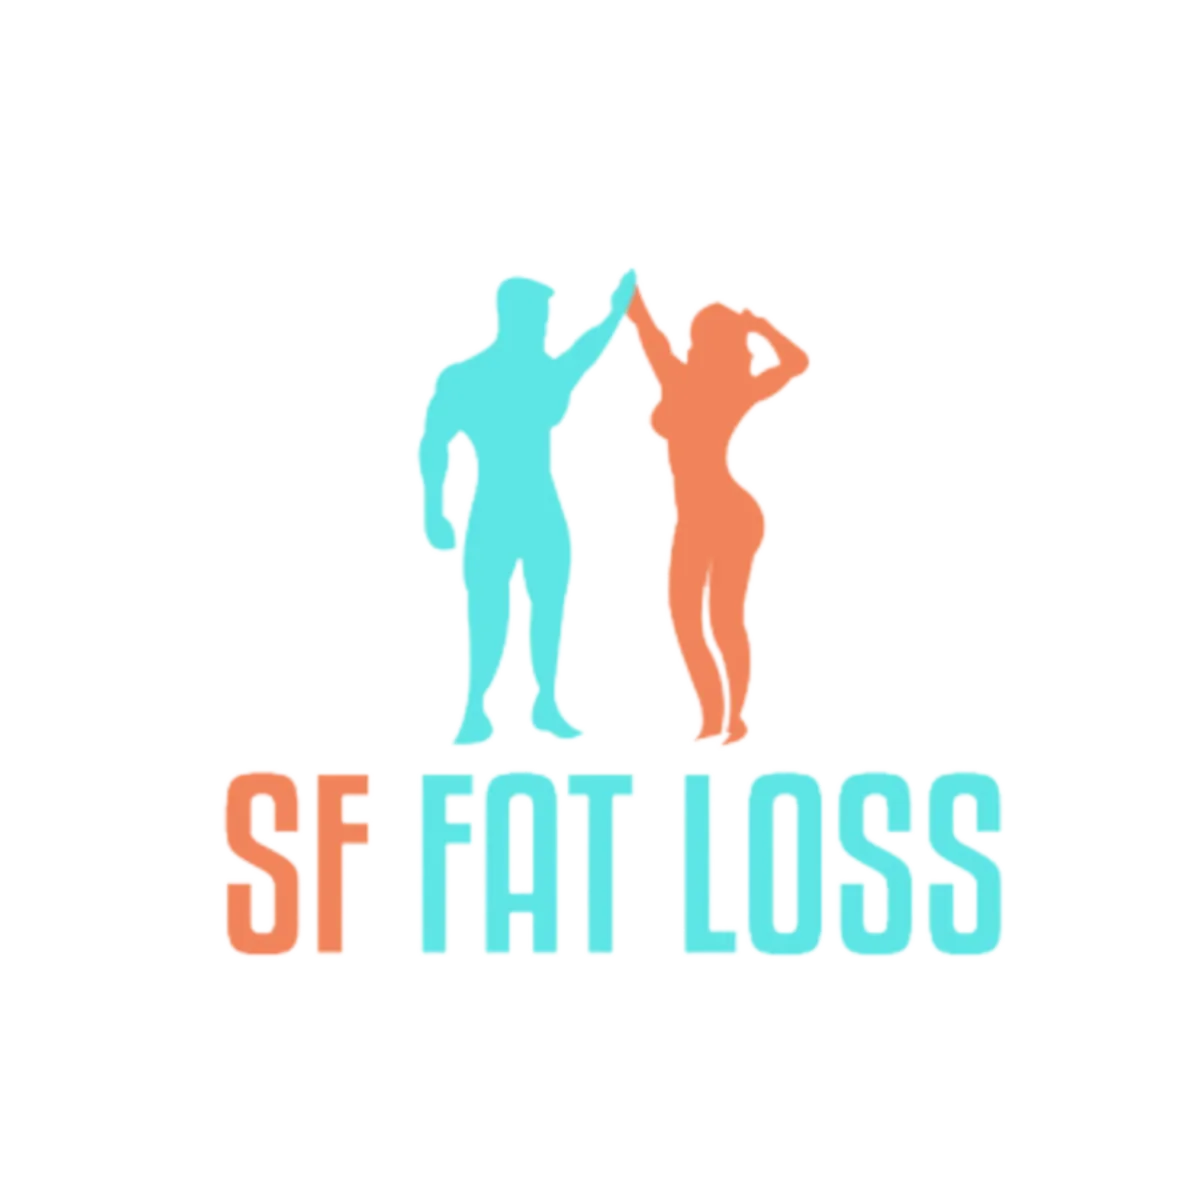 SF Fat Loss